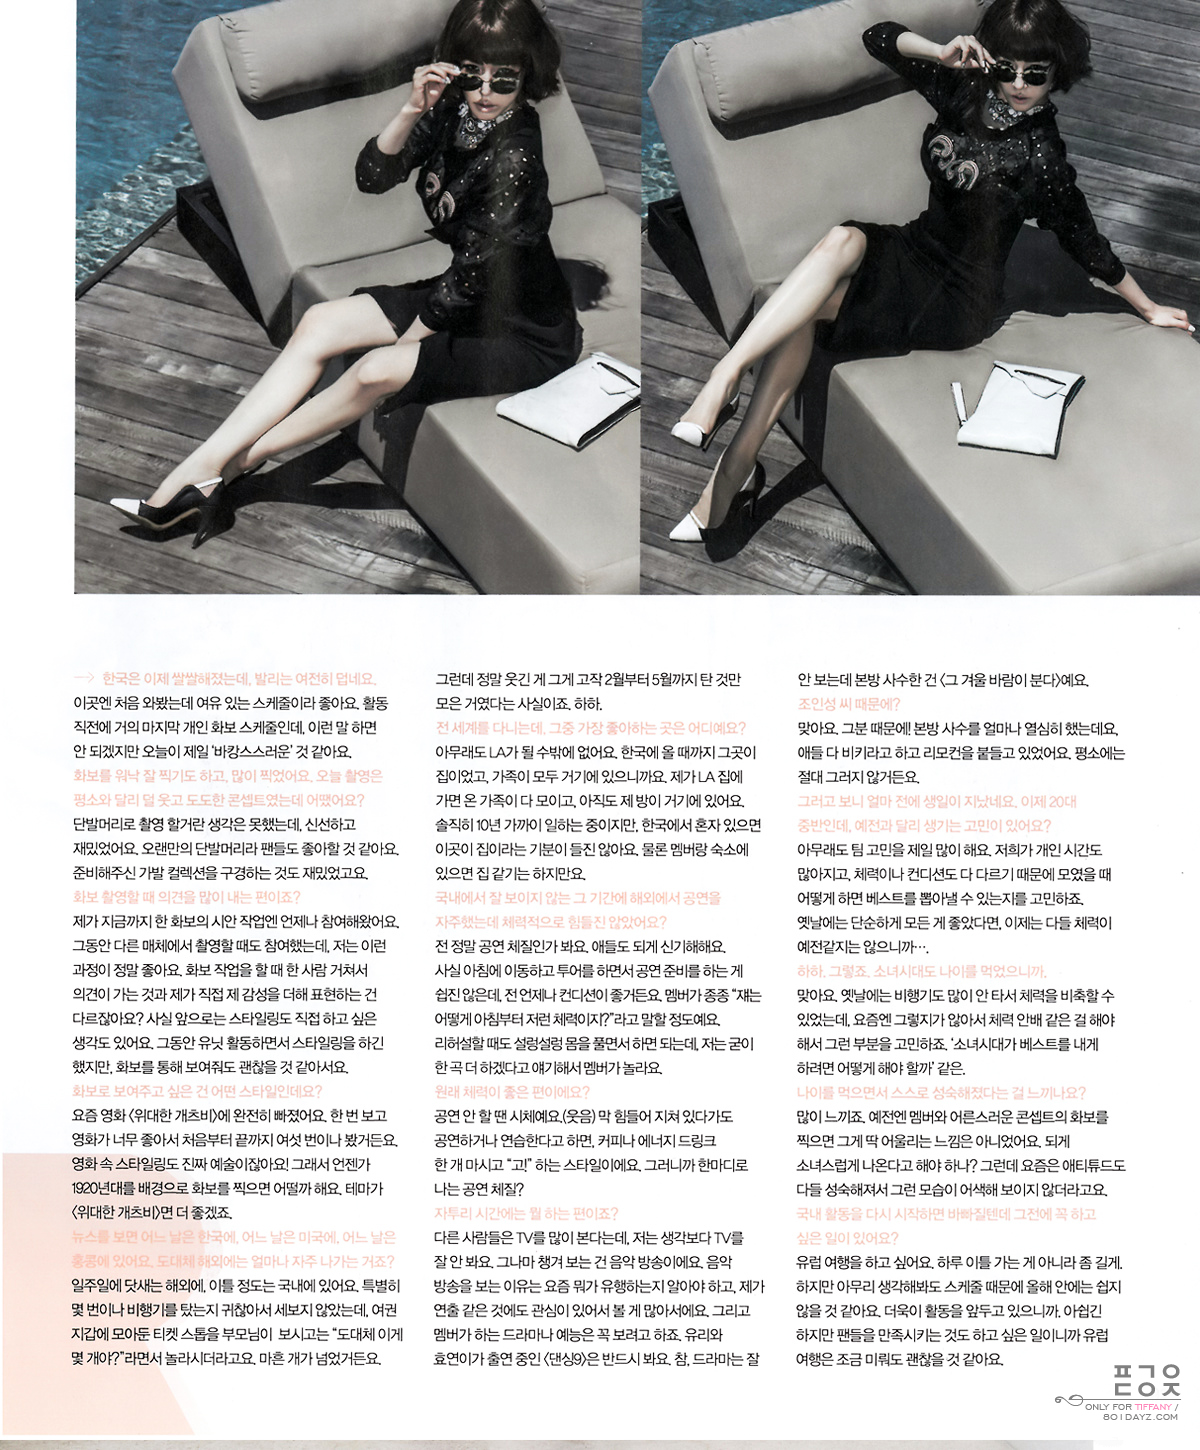 [PIC][17-09-2013]Tiffany xuất hiện trên ấn phẩm tháng 10 của tạp chí "NYLON" 2467AD33523853E91B3B62